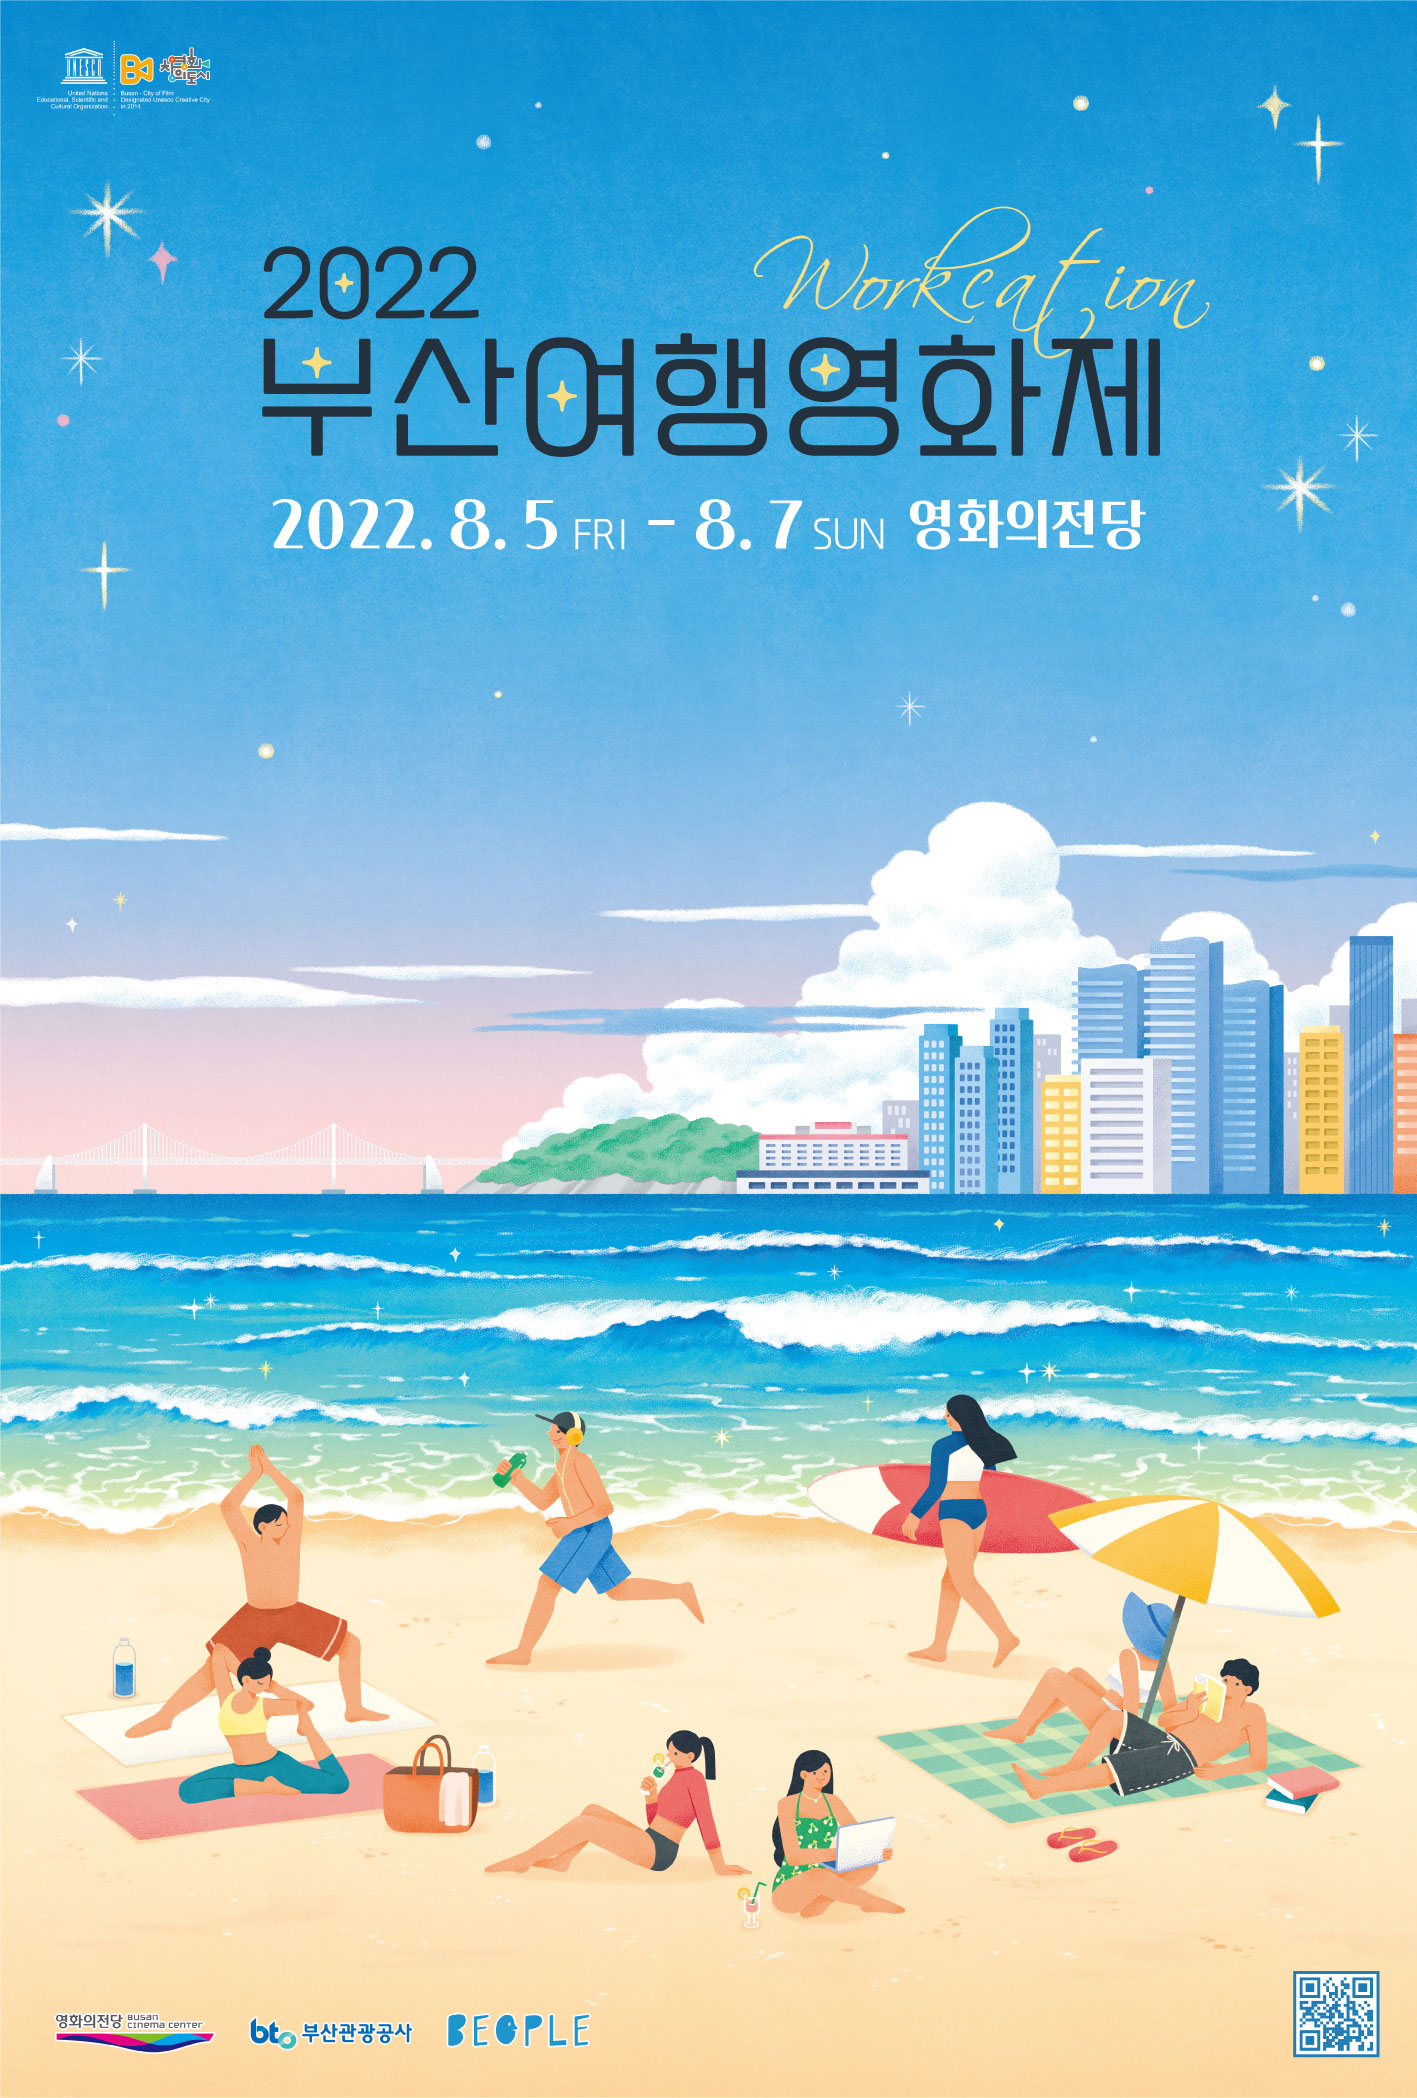 2022 부산여행영화제 workcation 2022.8.5 fri-8.7 sun 영화의전당